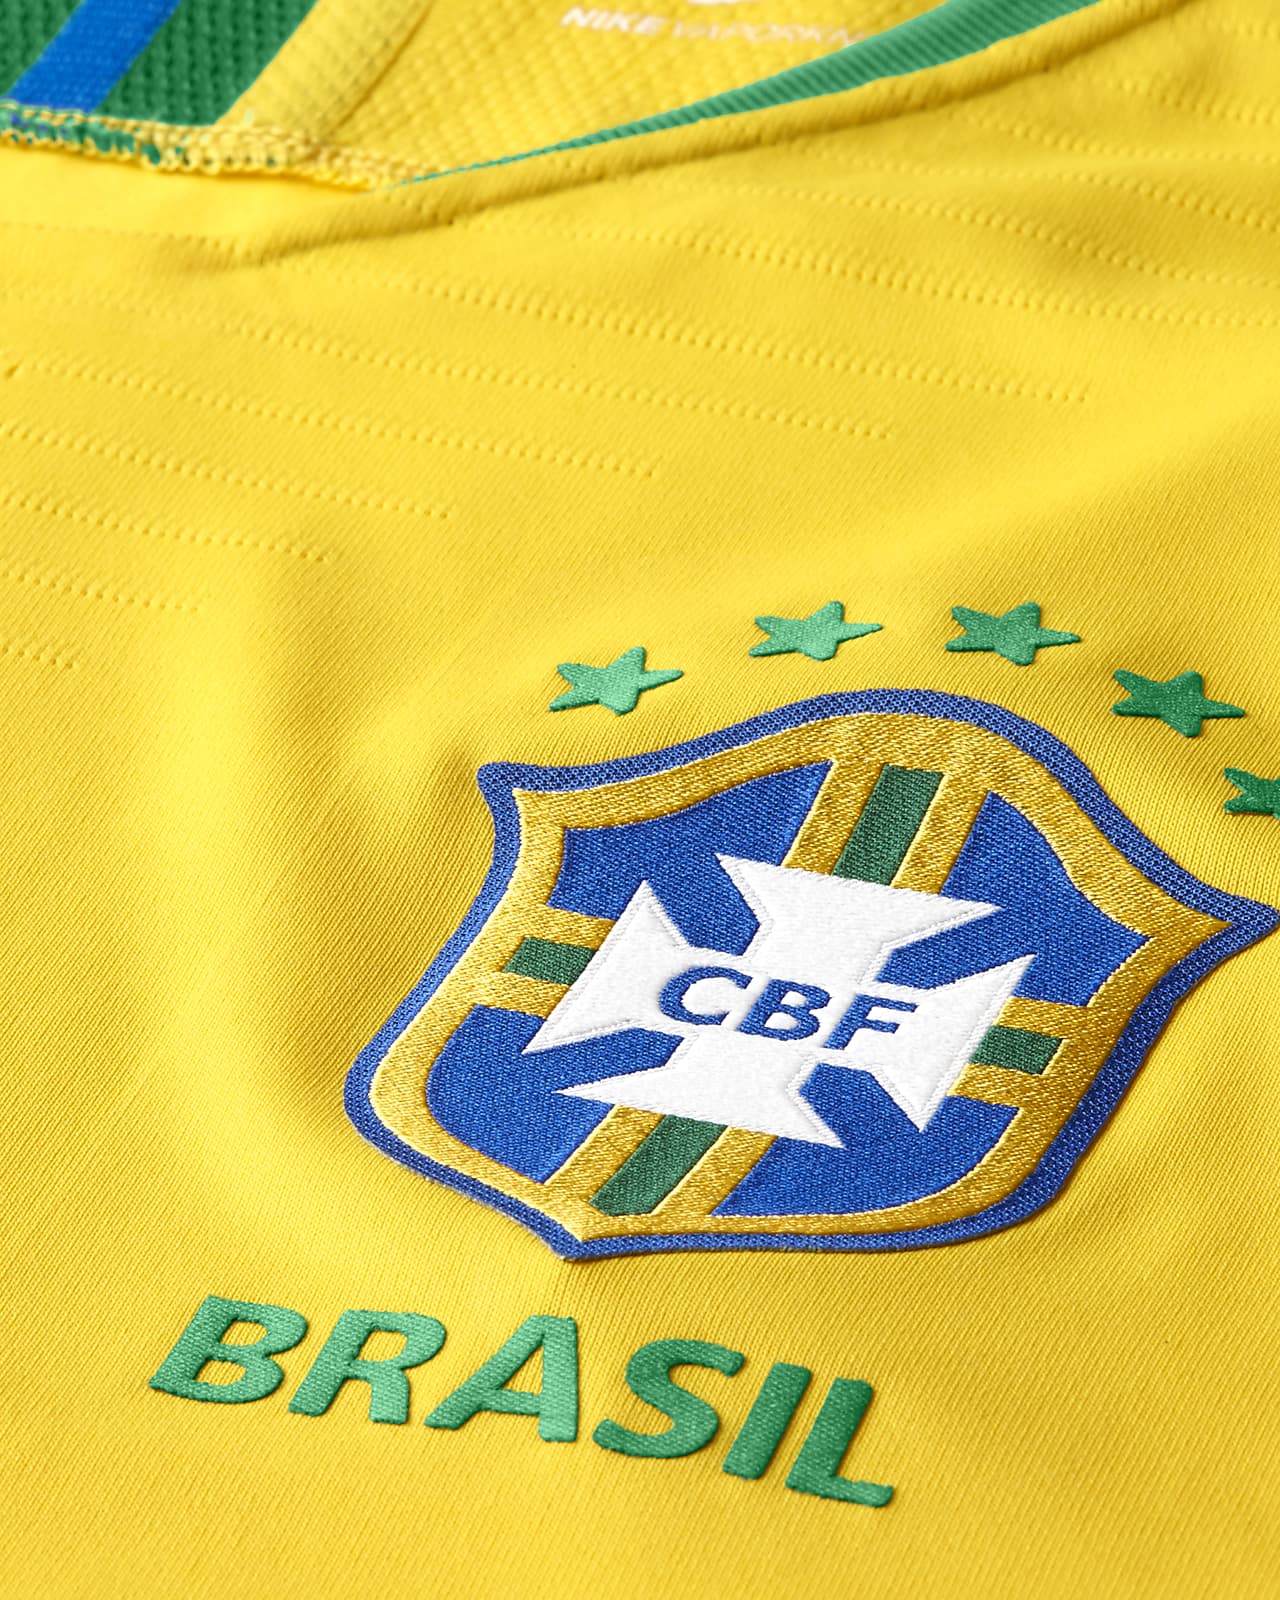 BRAZIL. Jersey. Shirt. DN0679-010